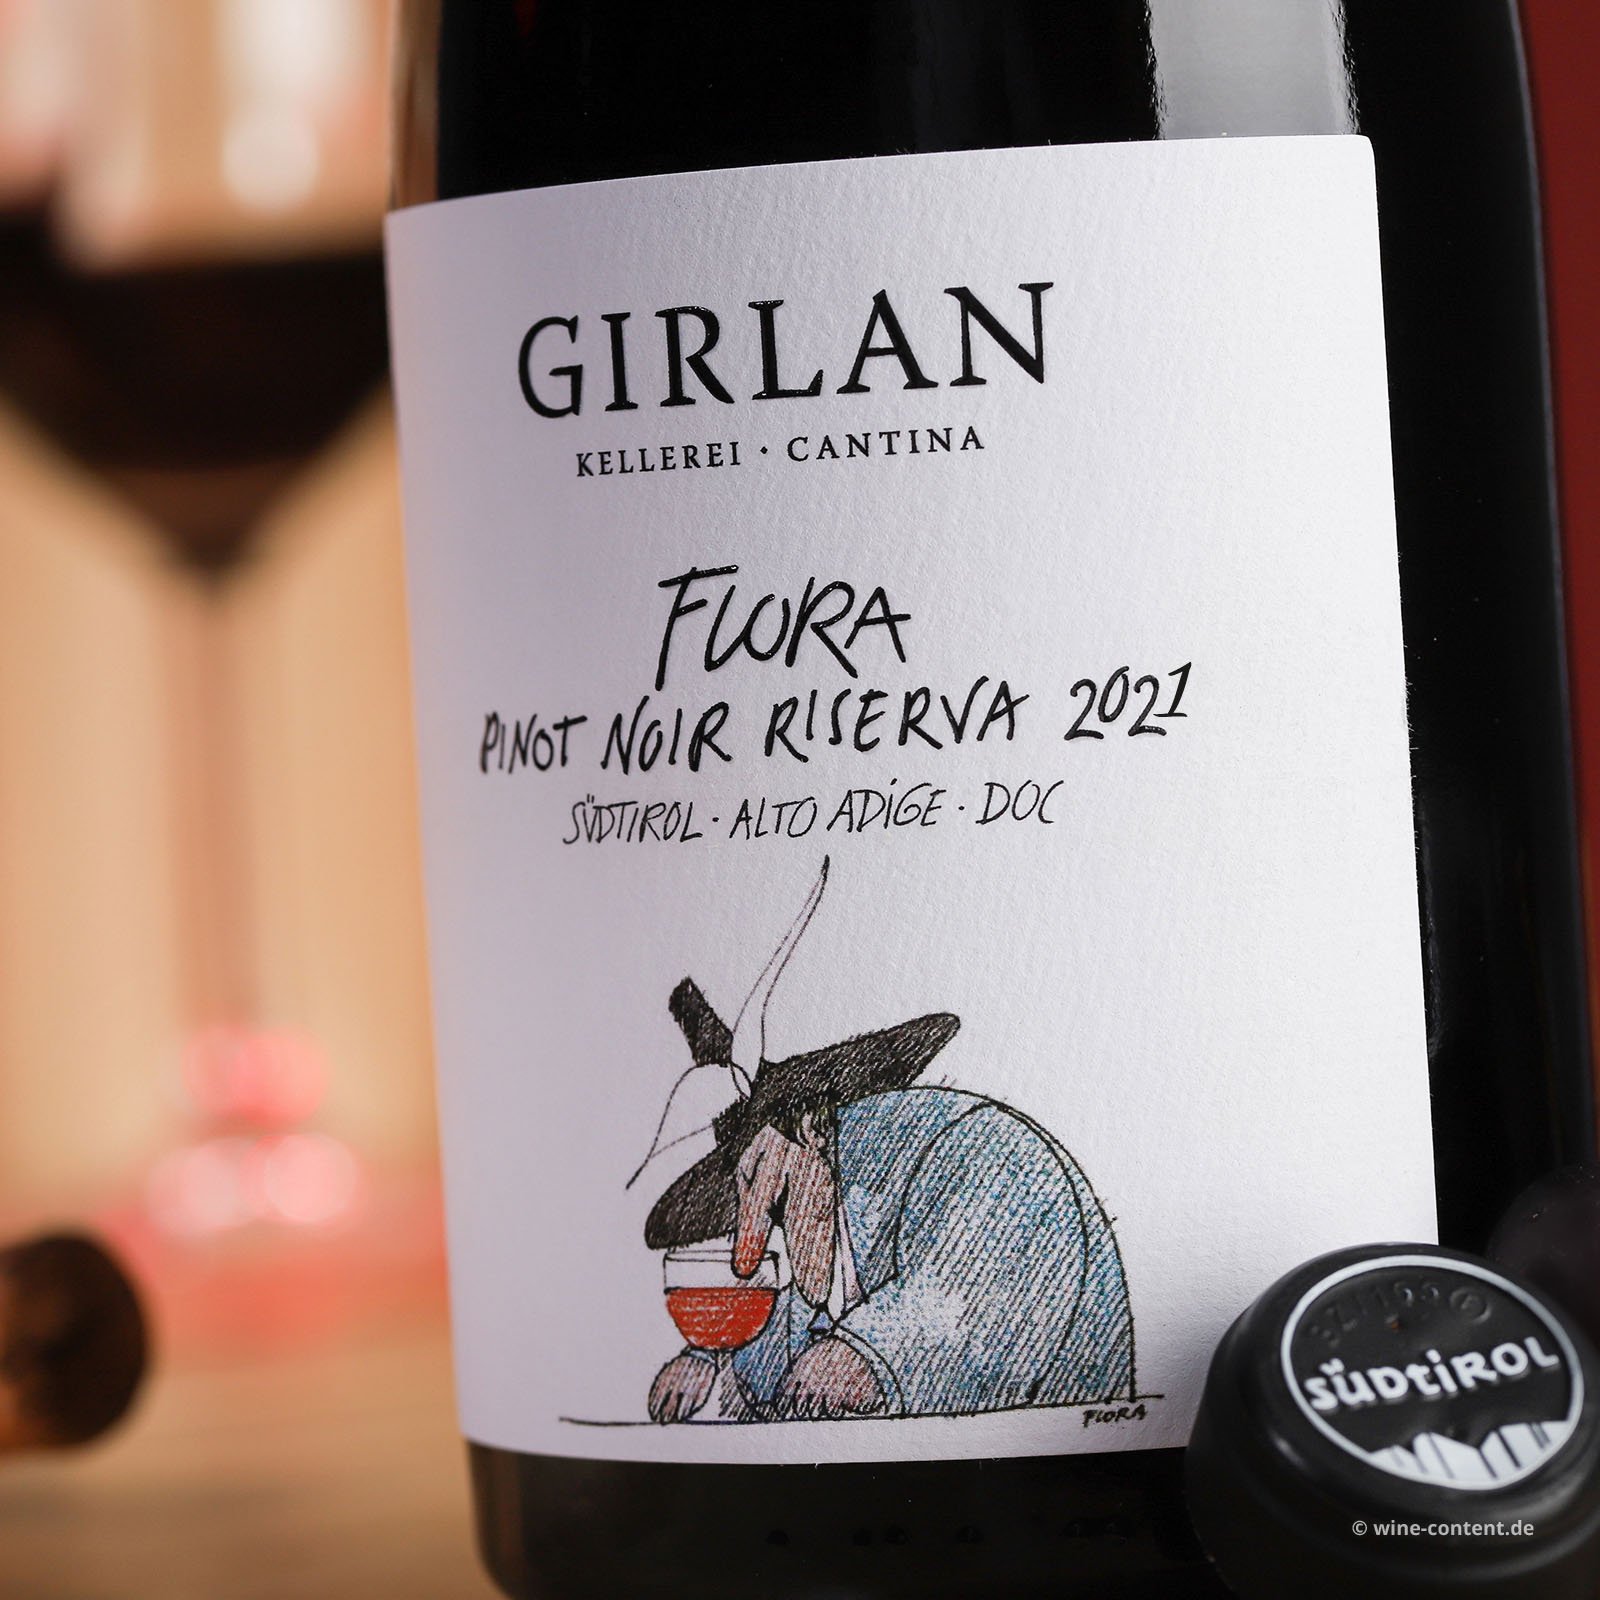 Pinot Noir Riserva 2021 Flora